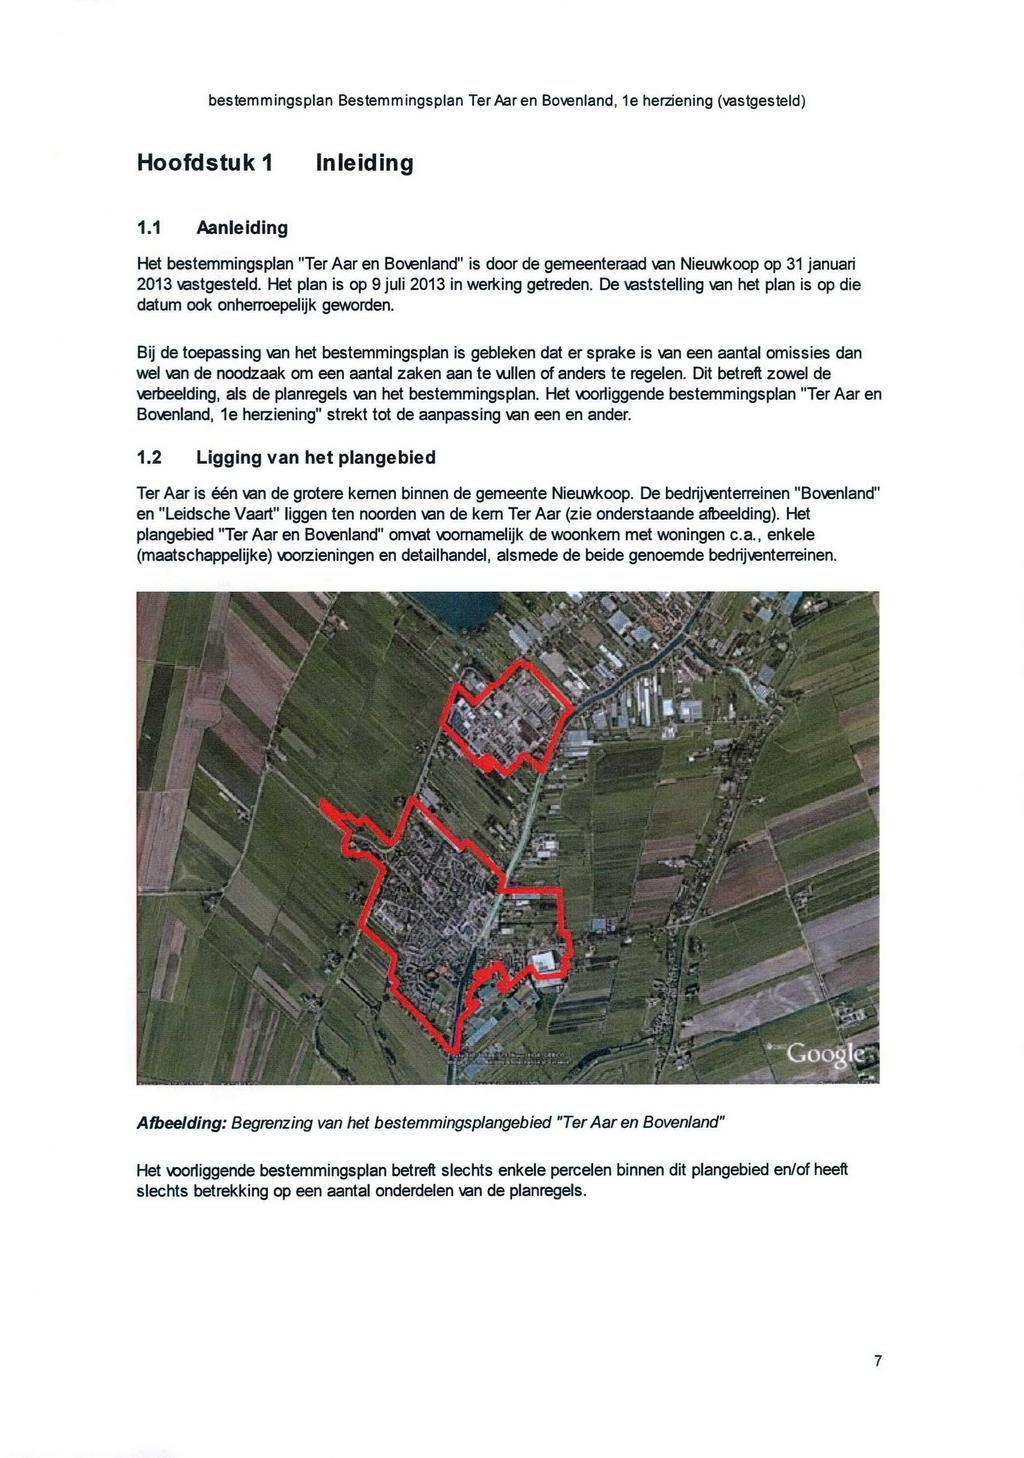 Hoofdstuk 1 Inleiding 1.1 Aanleiding Het bestemmingsplan "Ter Aar en Bovenland" is door de gemeenteraad van Nieuwkoop op 31 januari 2013 vastgesteld. Het plan is op 9 juli 2013 in werking getreden.